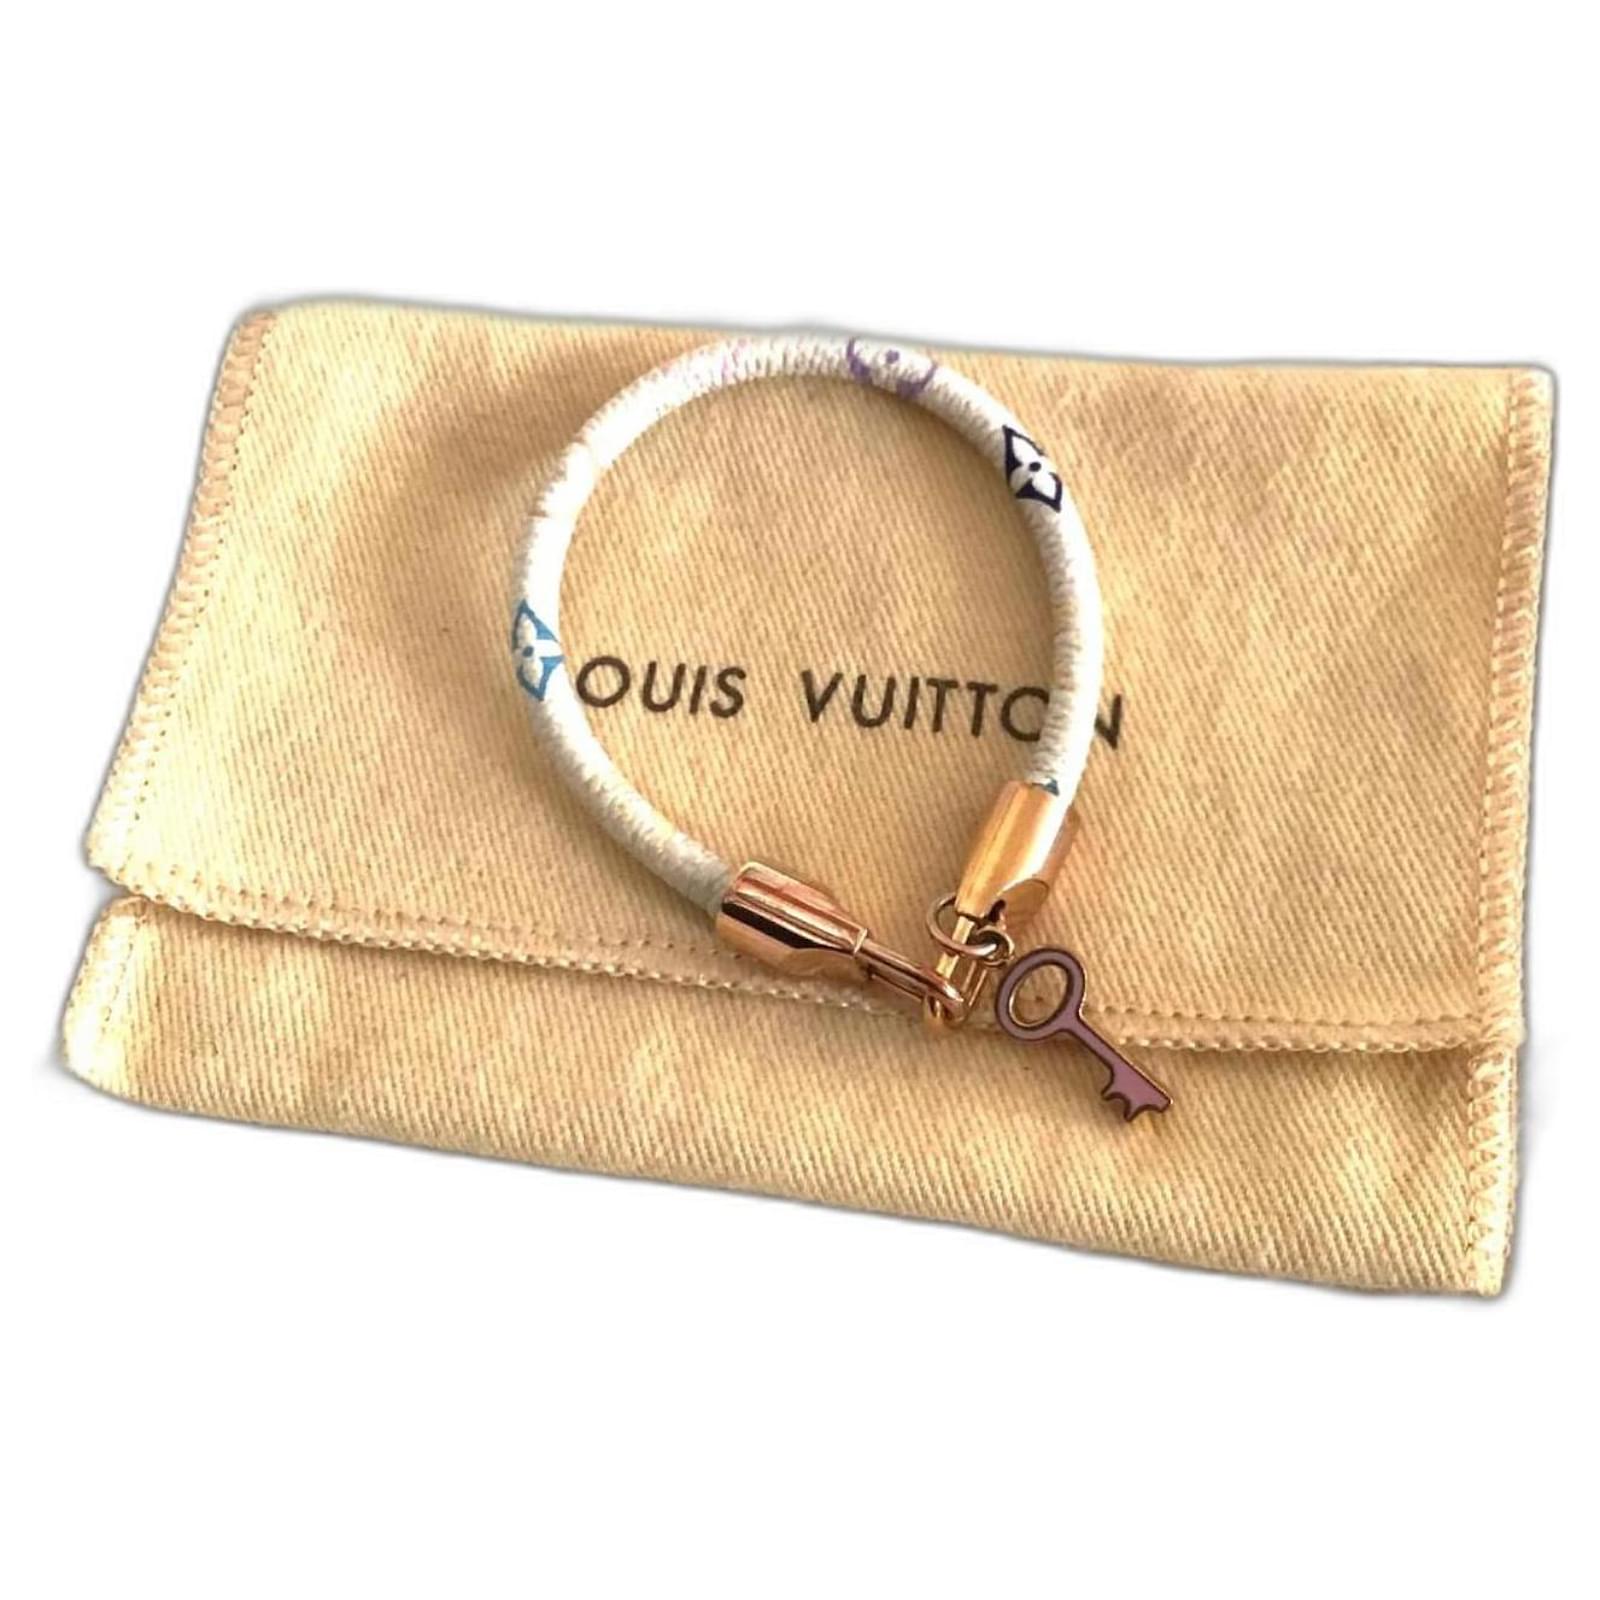 Pulseira Louis Vuitton V Couro Bracelete